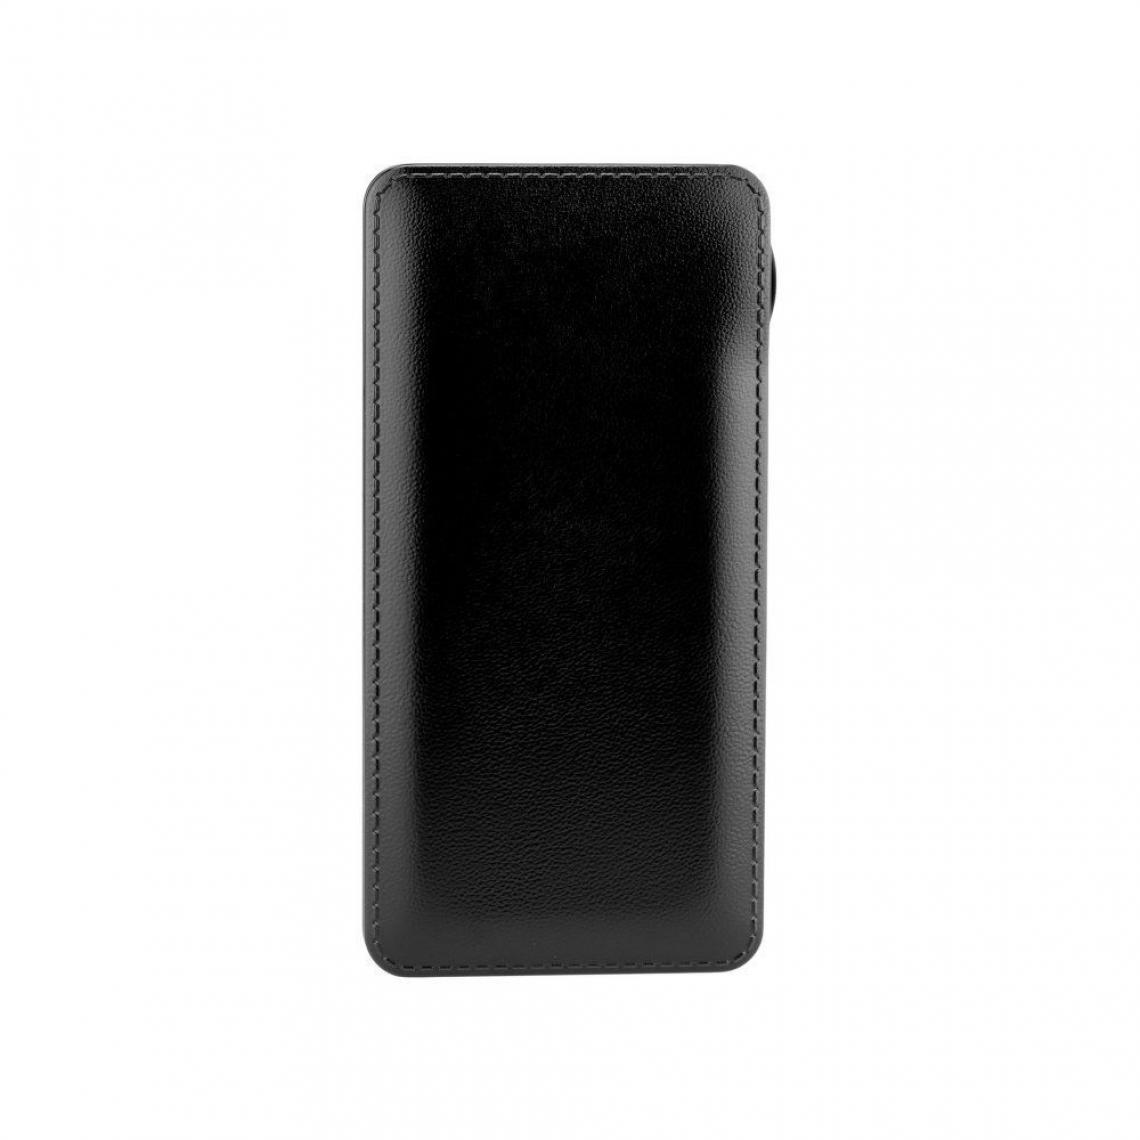 Ozzzo - Chargeur batterie externe 10000mAh powerbank ozzzo noir pour Sony Xperia 10 II 2020 - Autres accessoires smartphone